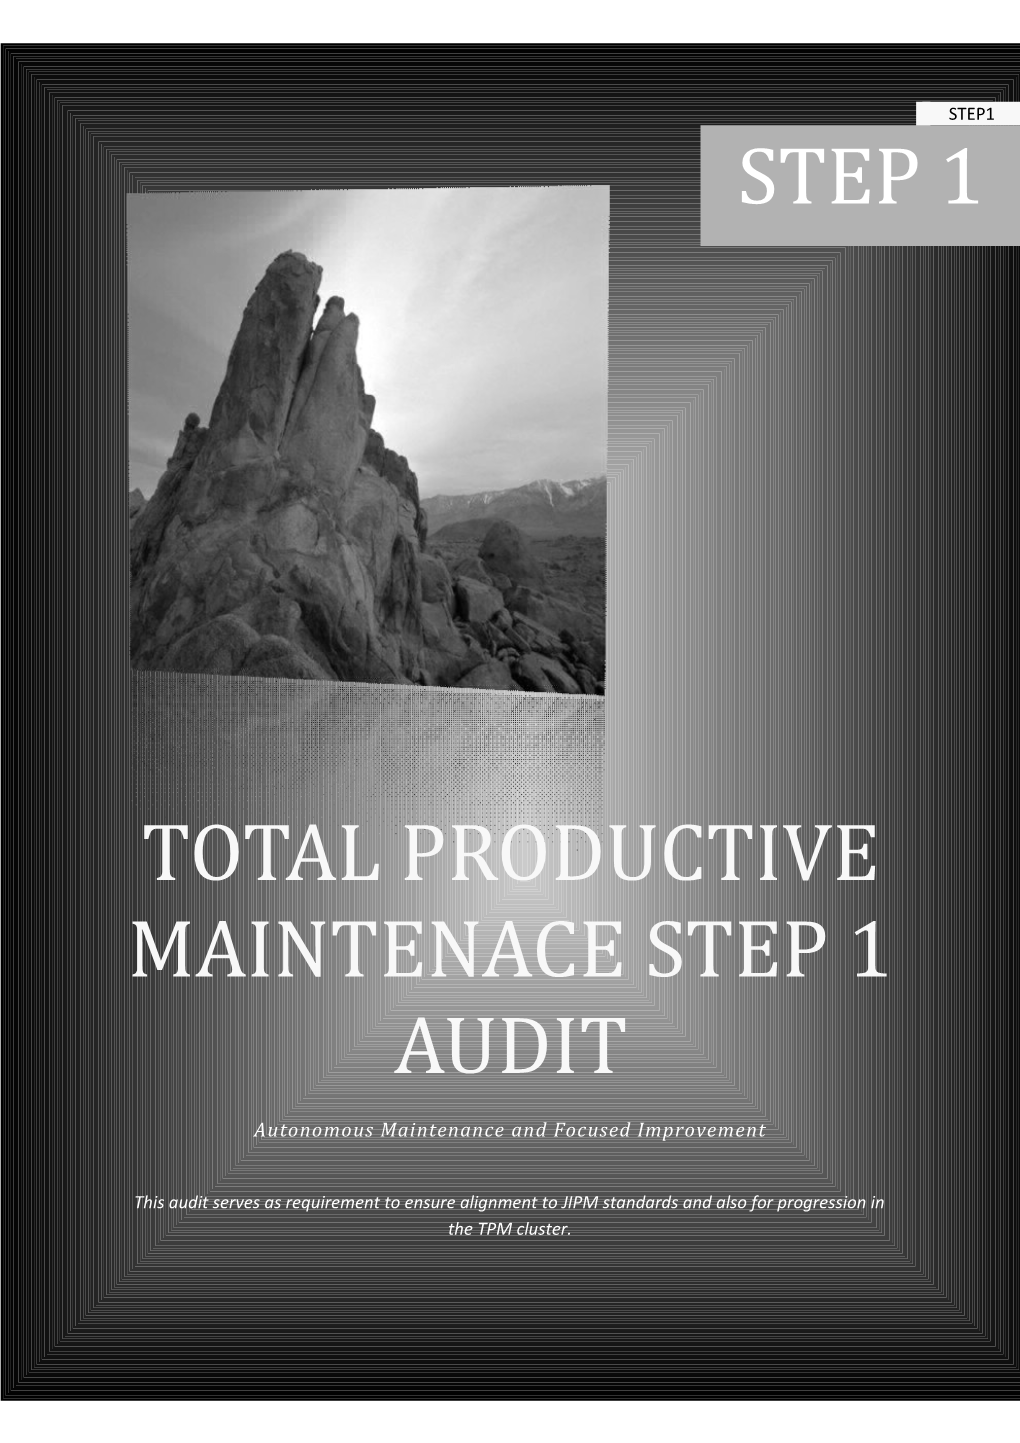 Total Productive Maintenace Step 1 Audit